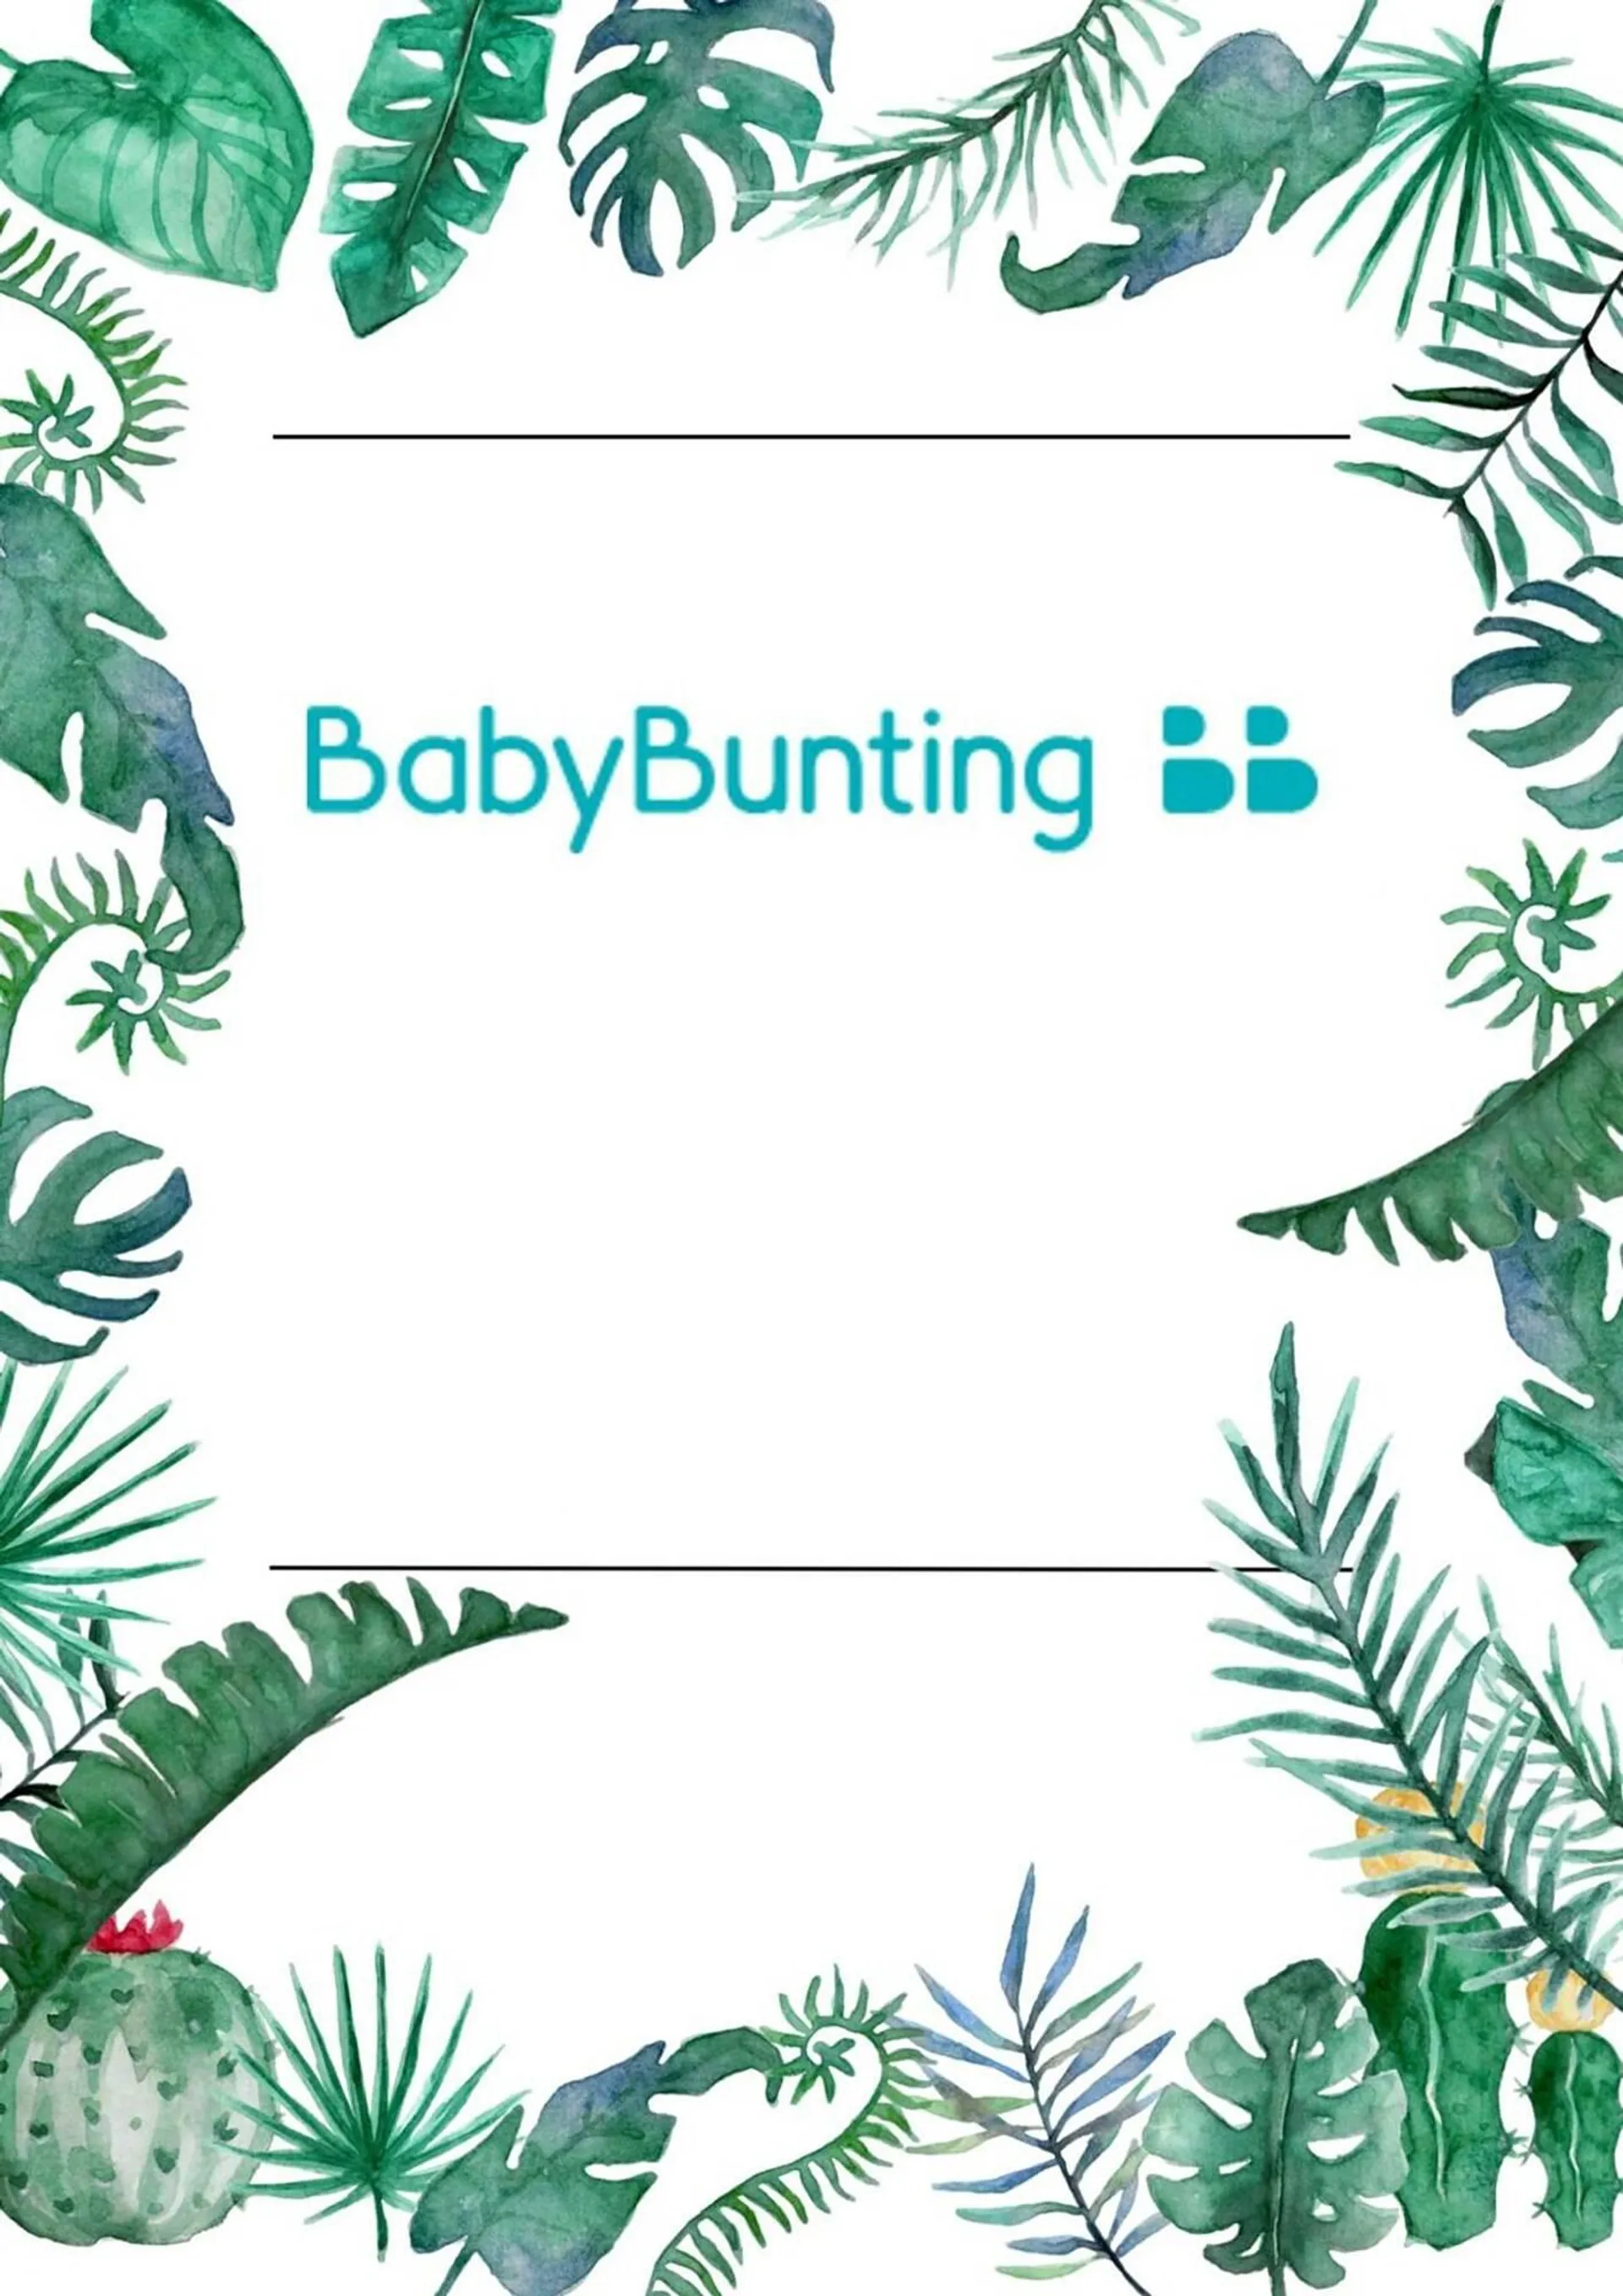 Baby Bunting catalogue - 1